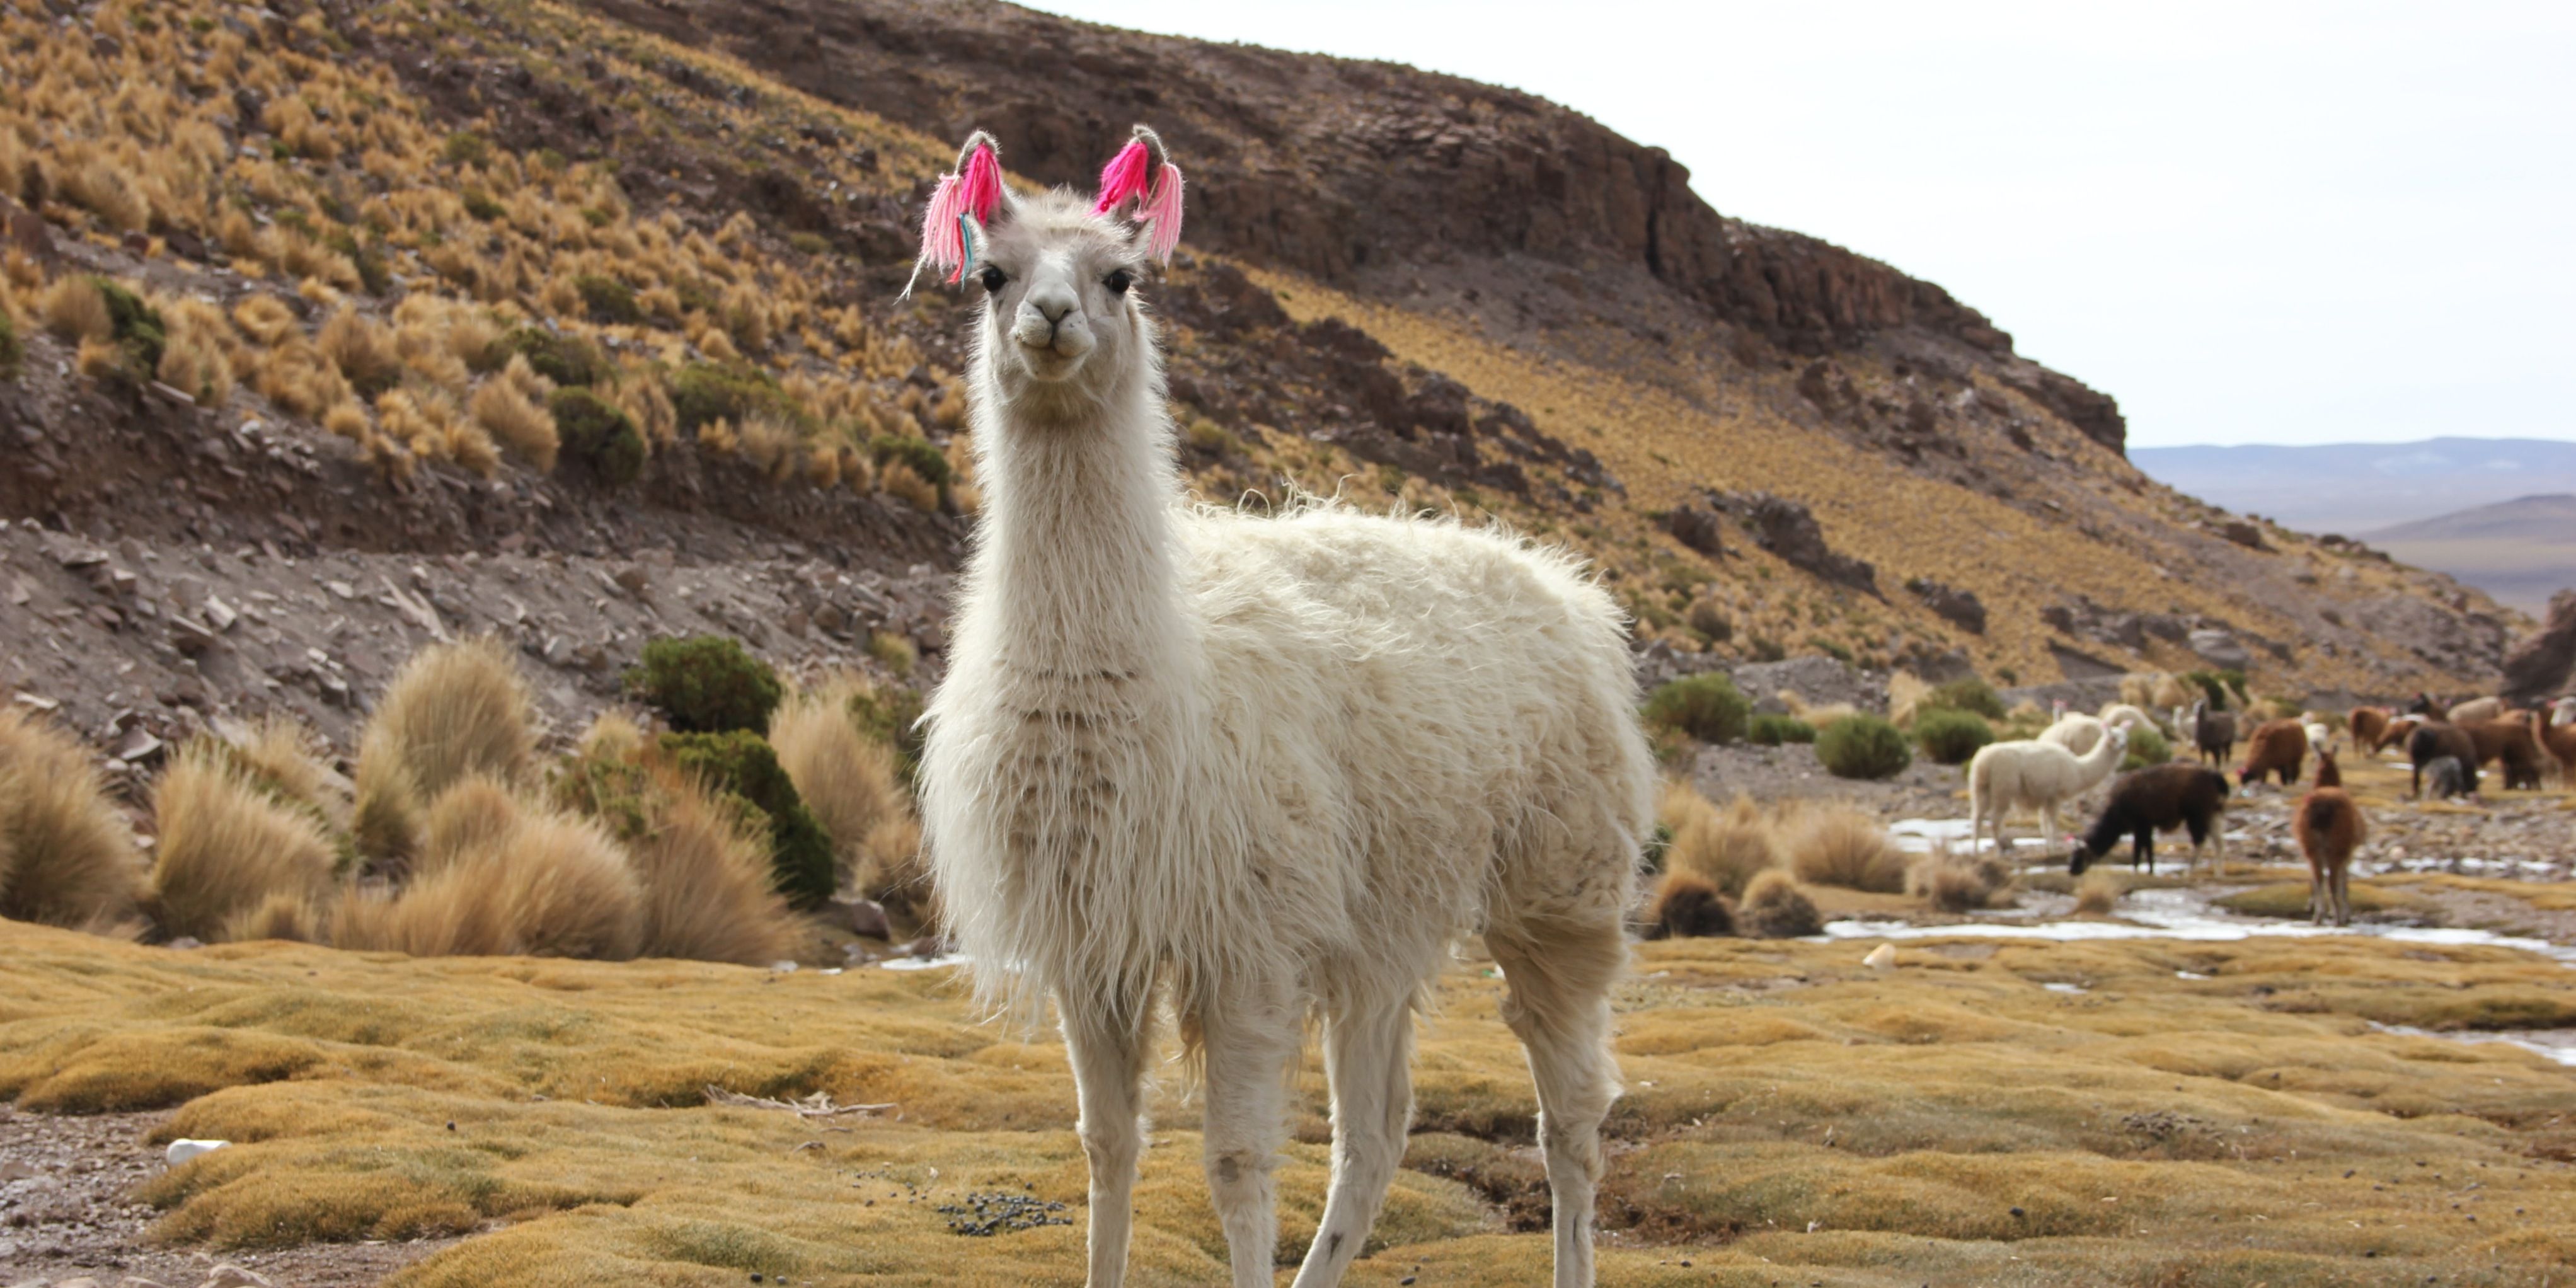 Beautiful white llama